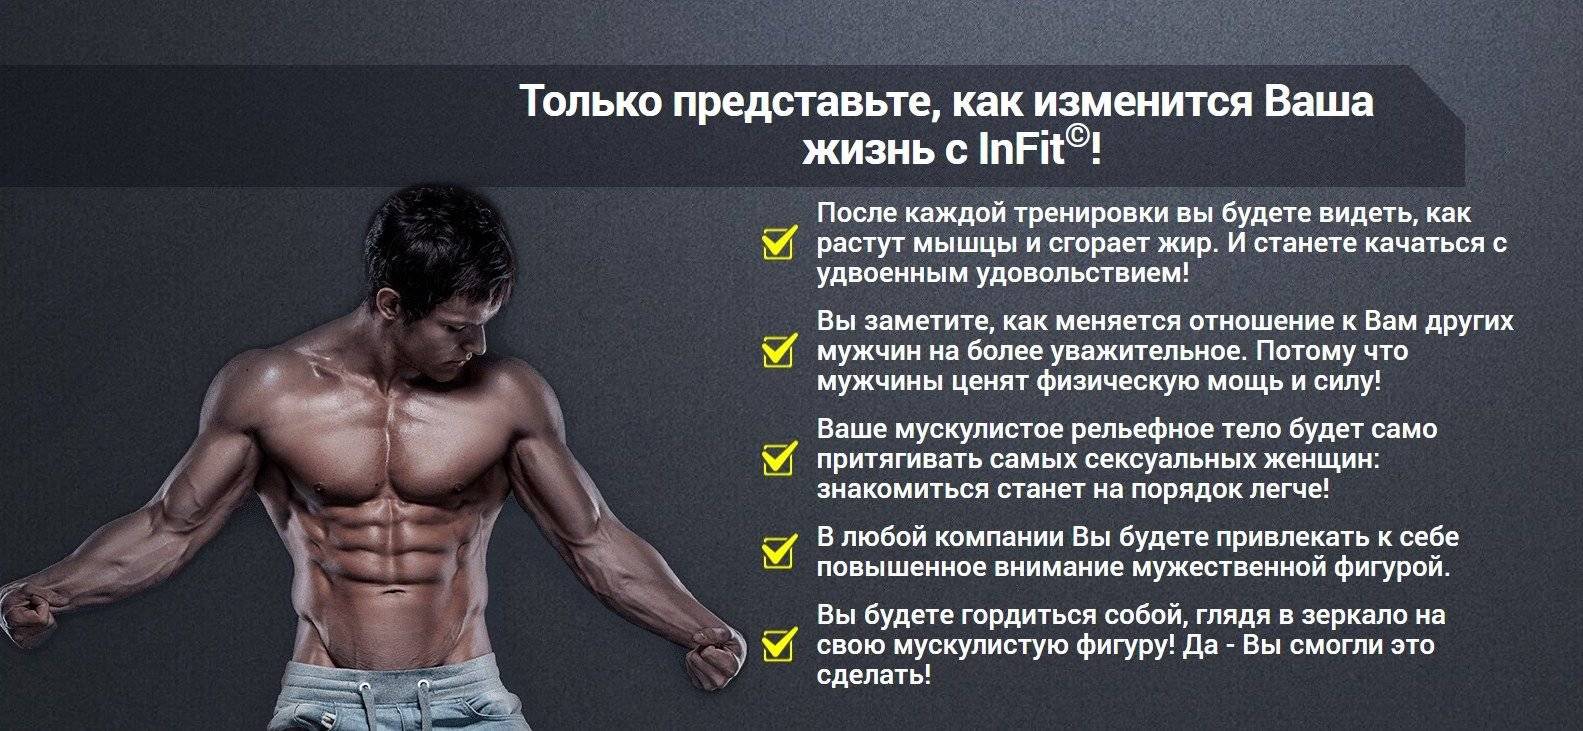 Занятие для похудения мужчин. План тренировок для набора мышечной массы. Тренировки для тела для мужчин. Программа тренировок для сушки тела для мужчин. Программа тренировок для похудения.